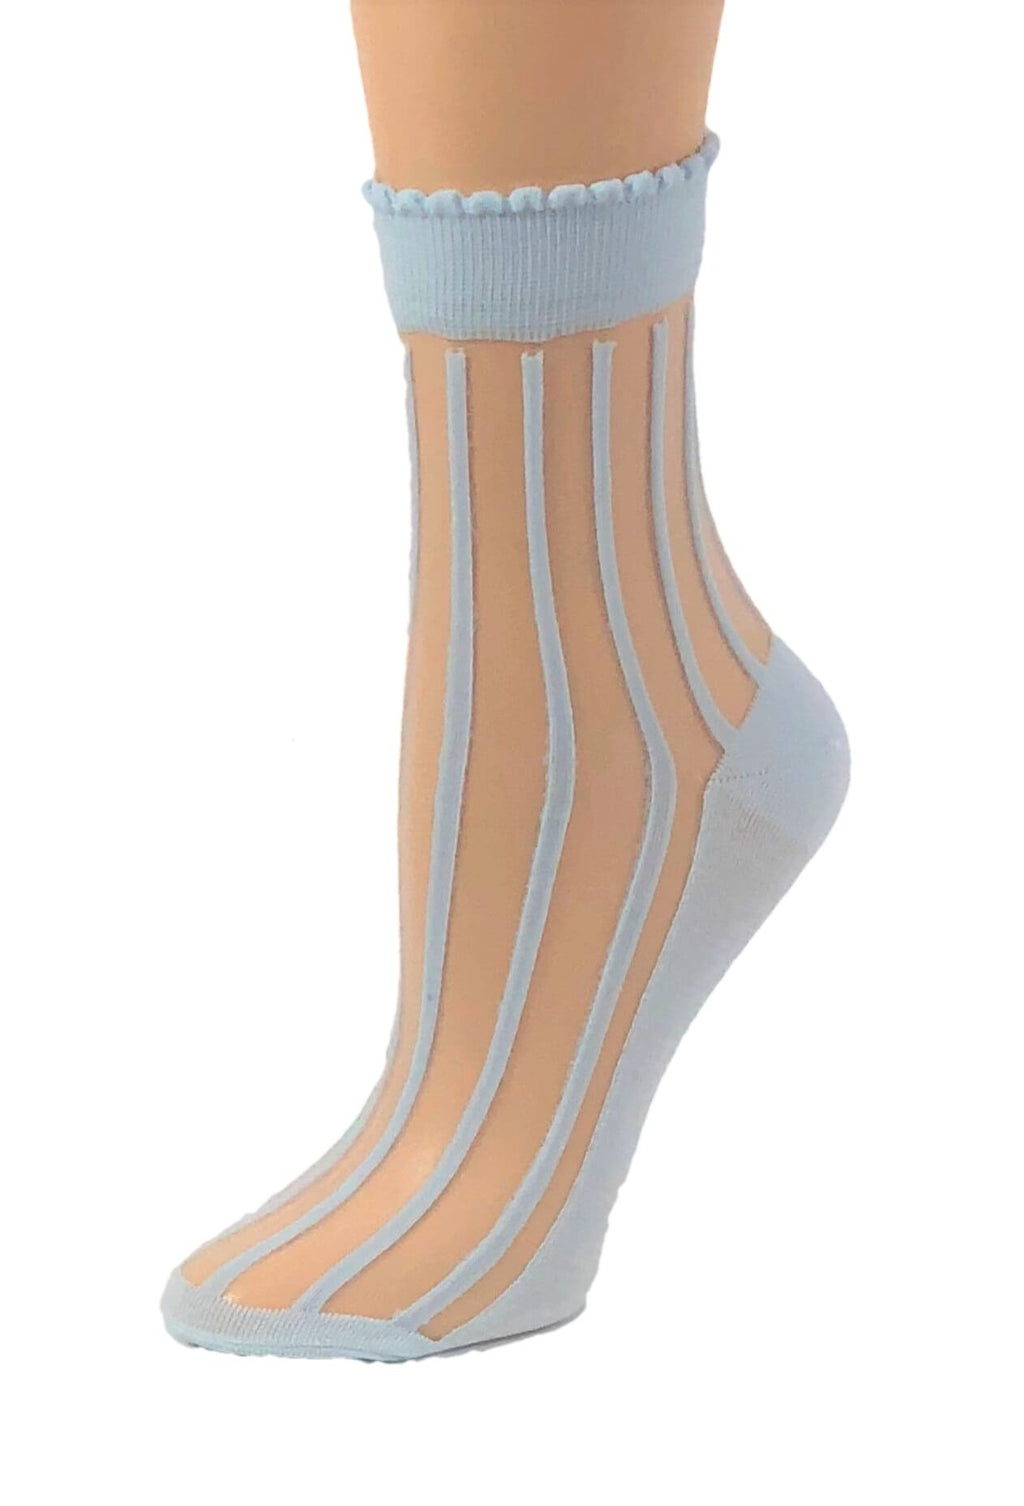 Aqua Striped Sheer Socks - Global Trendz Fashion®